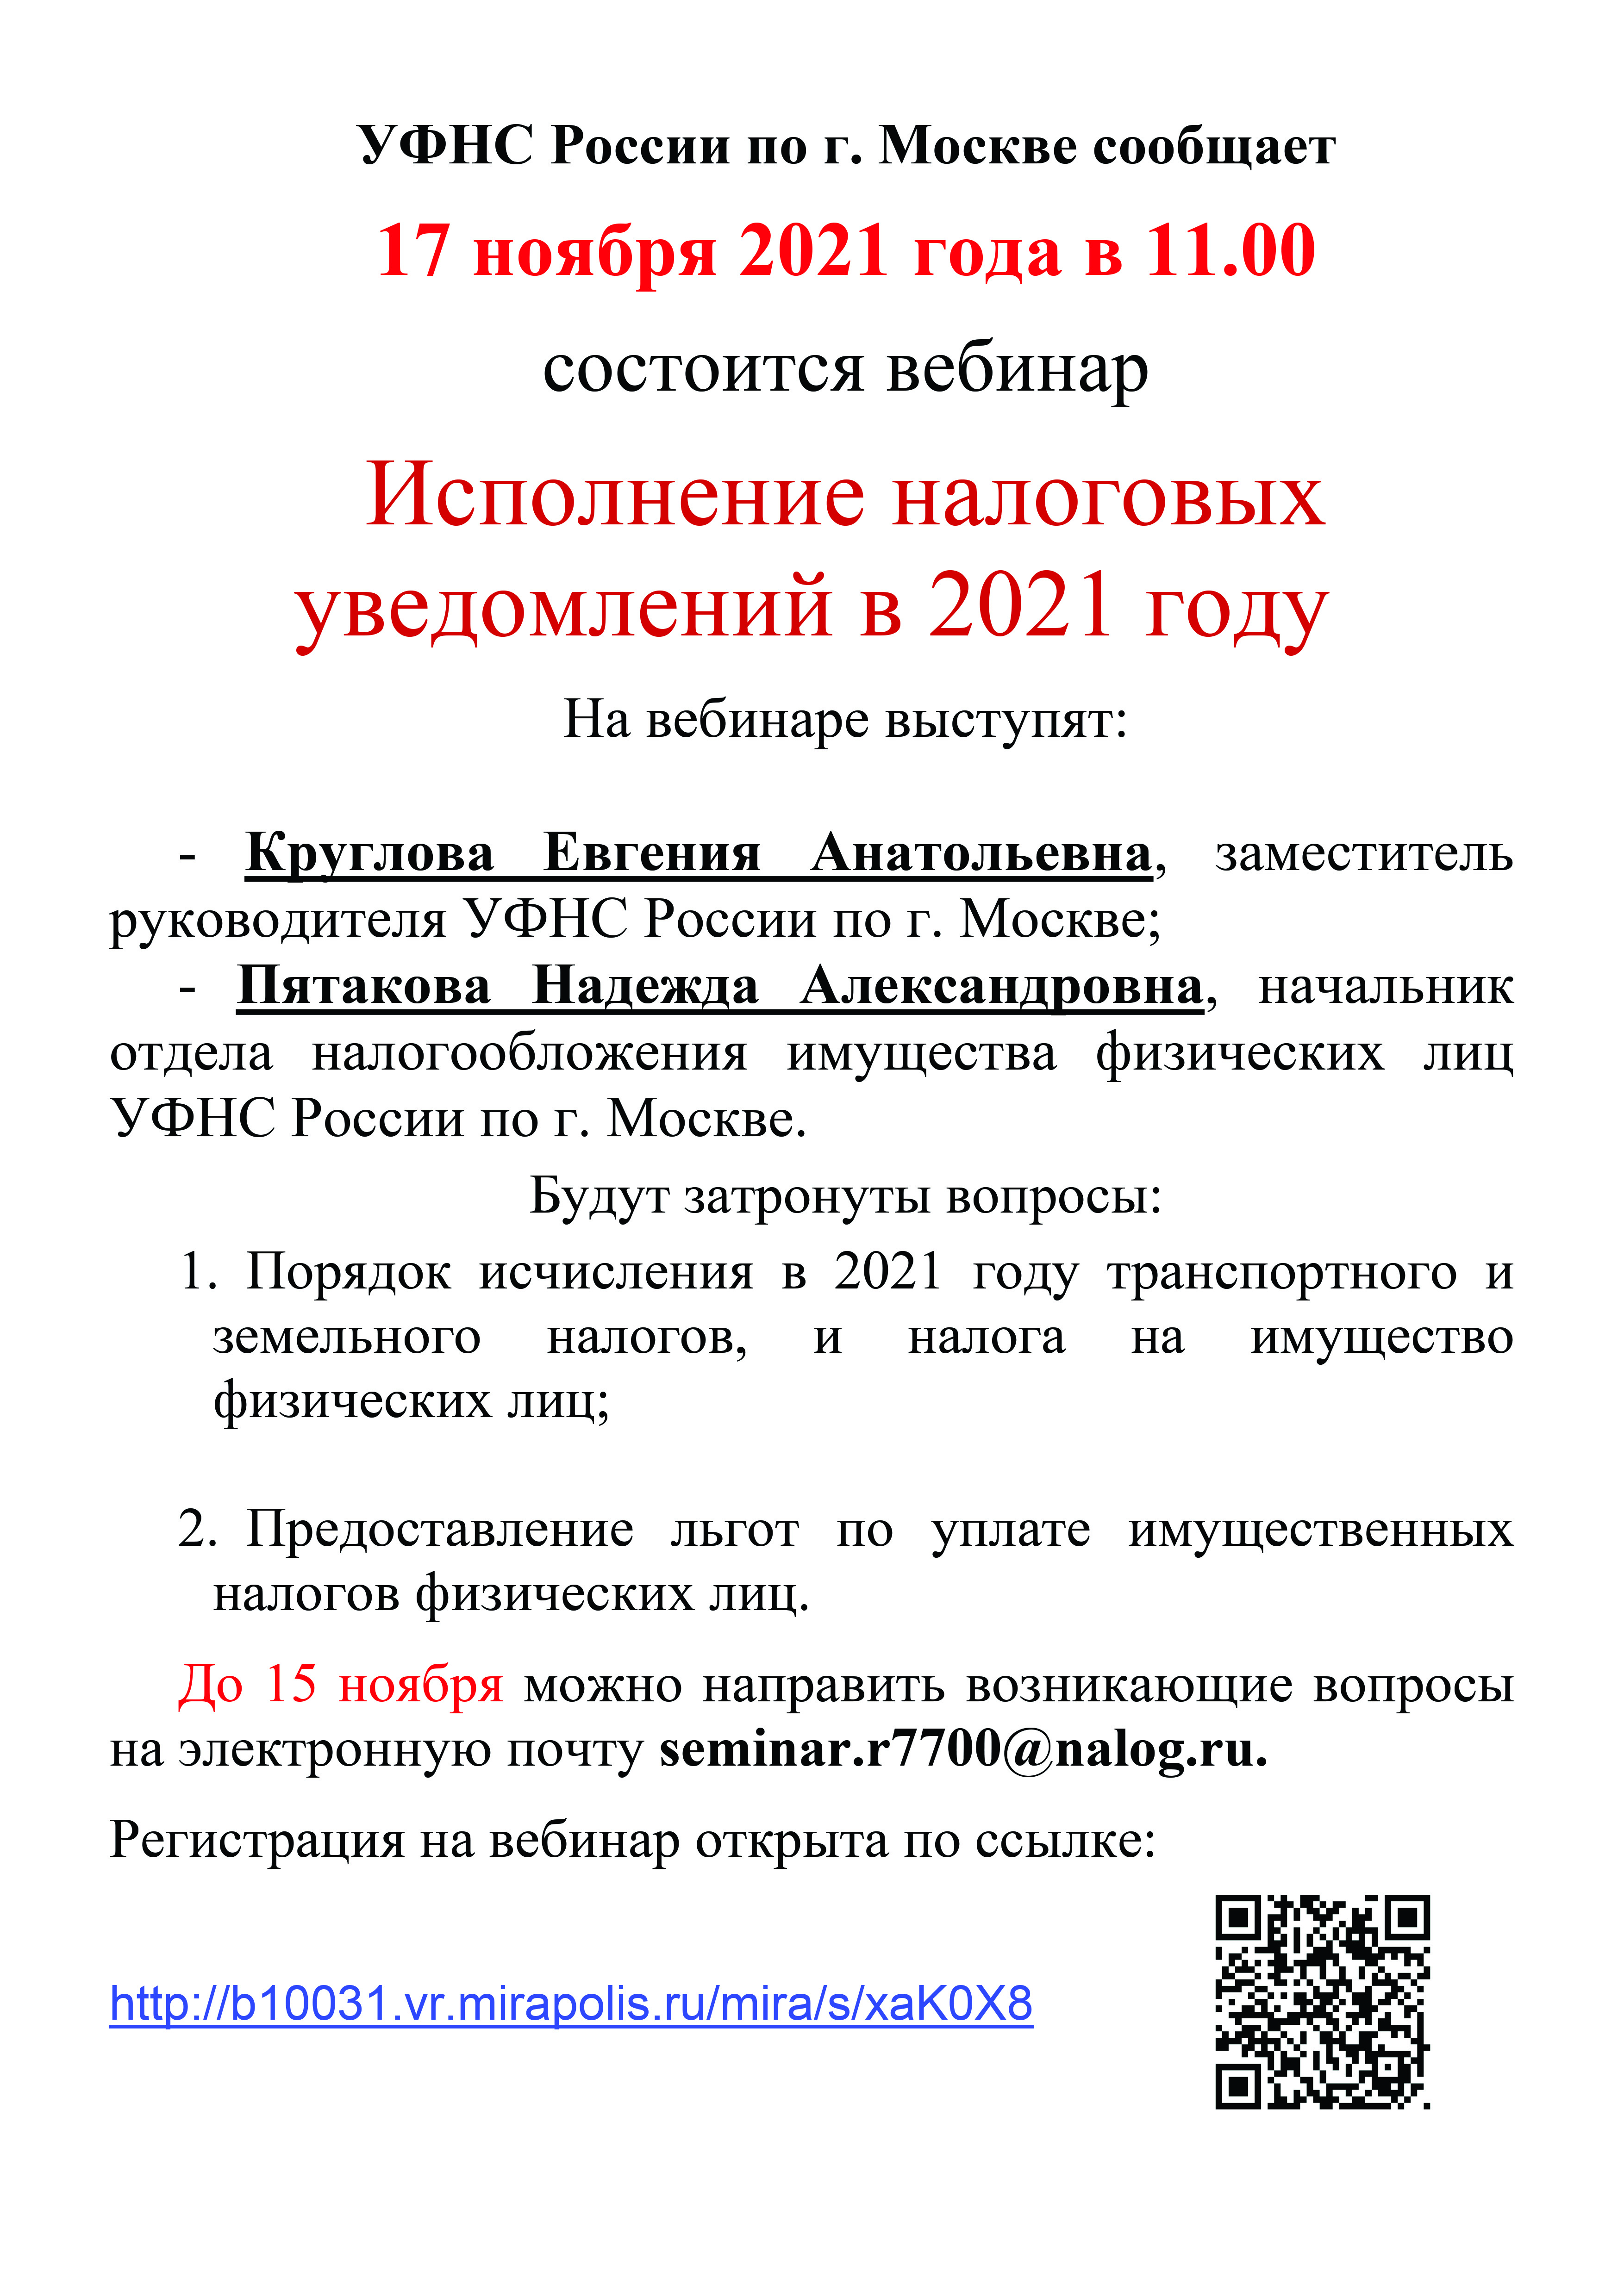 УФНС России по г. Москве сообщает  17 ноября 2021 года в 11.00  состоится вебинар